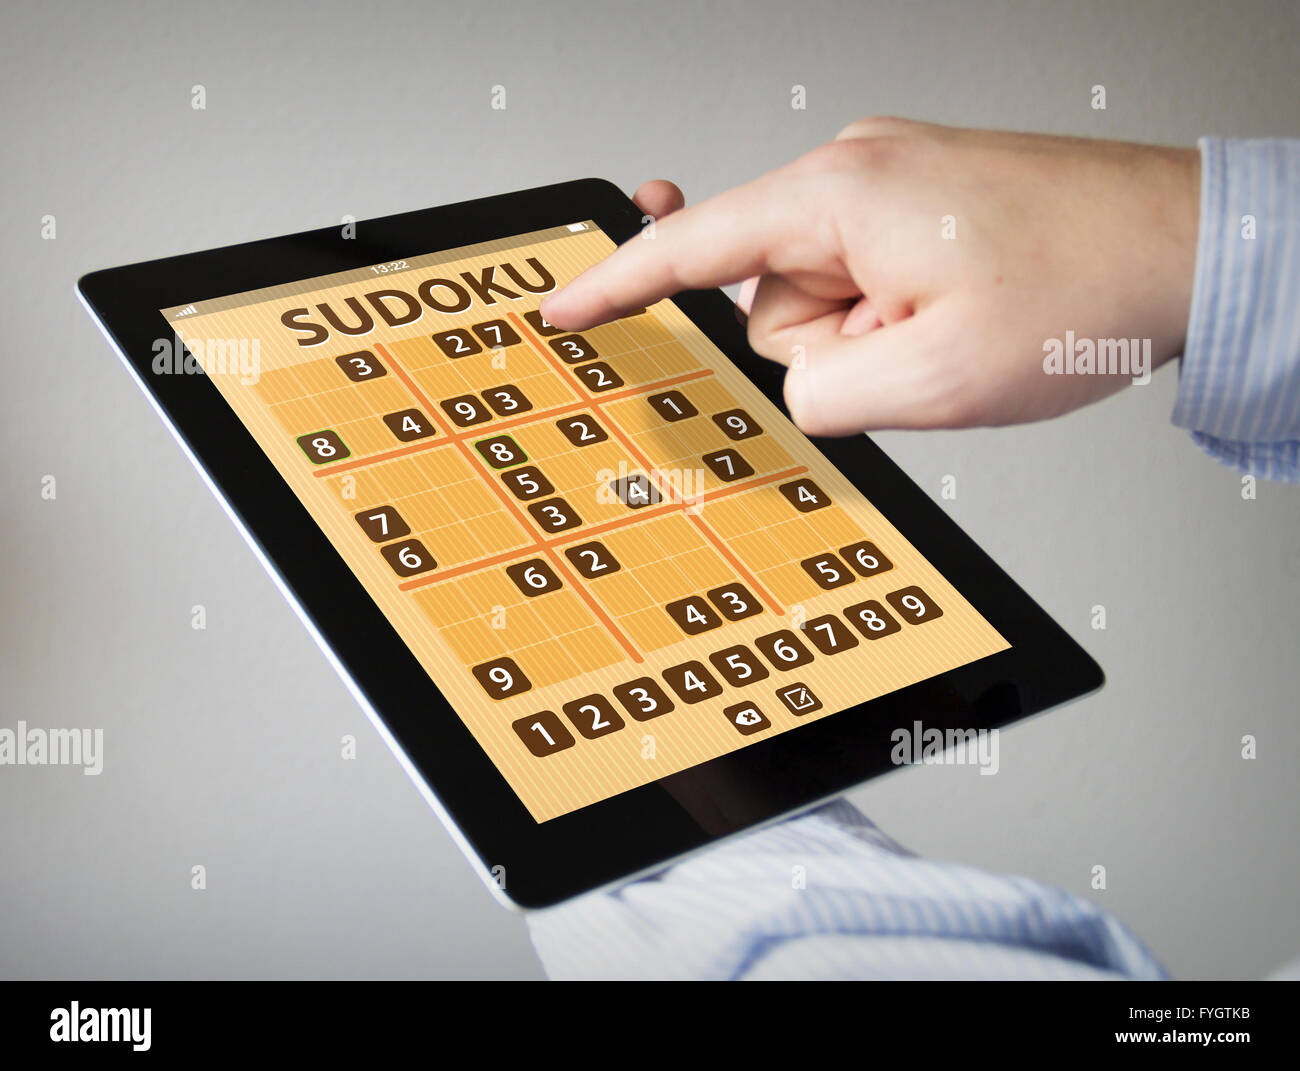 Les mains à l'écran tactile Tablet avec application jeu sudoku Banque D'Images